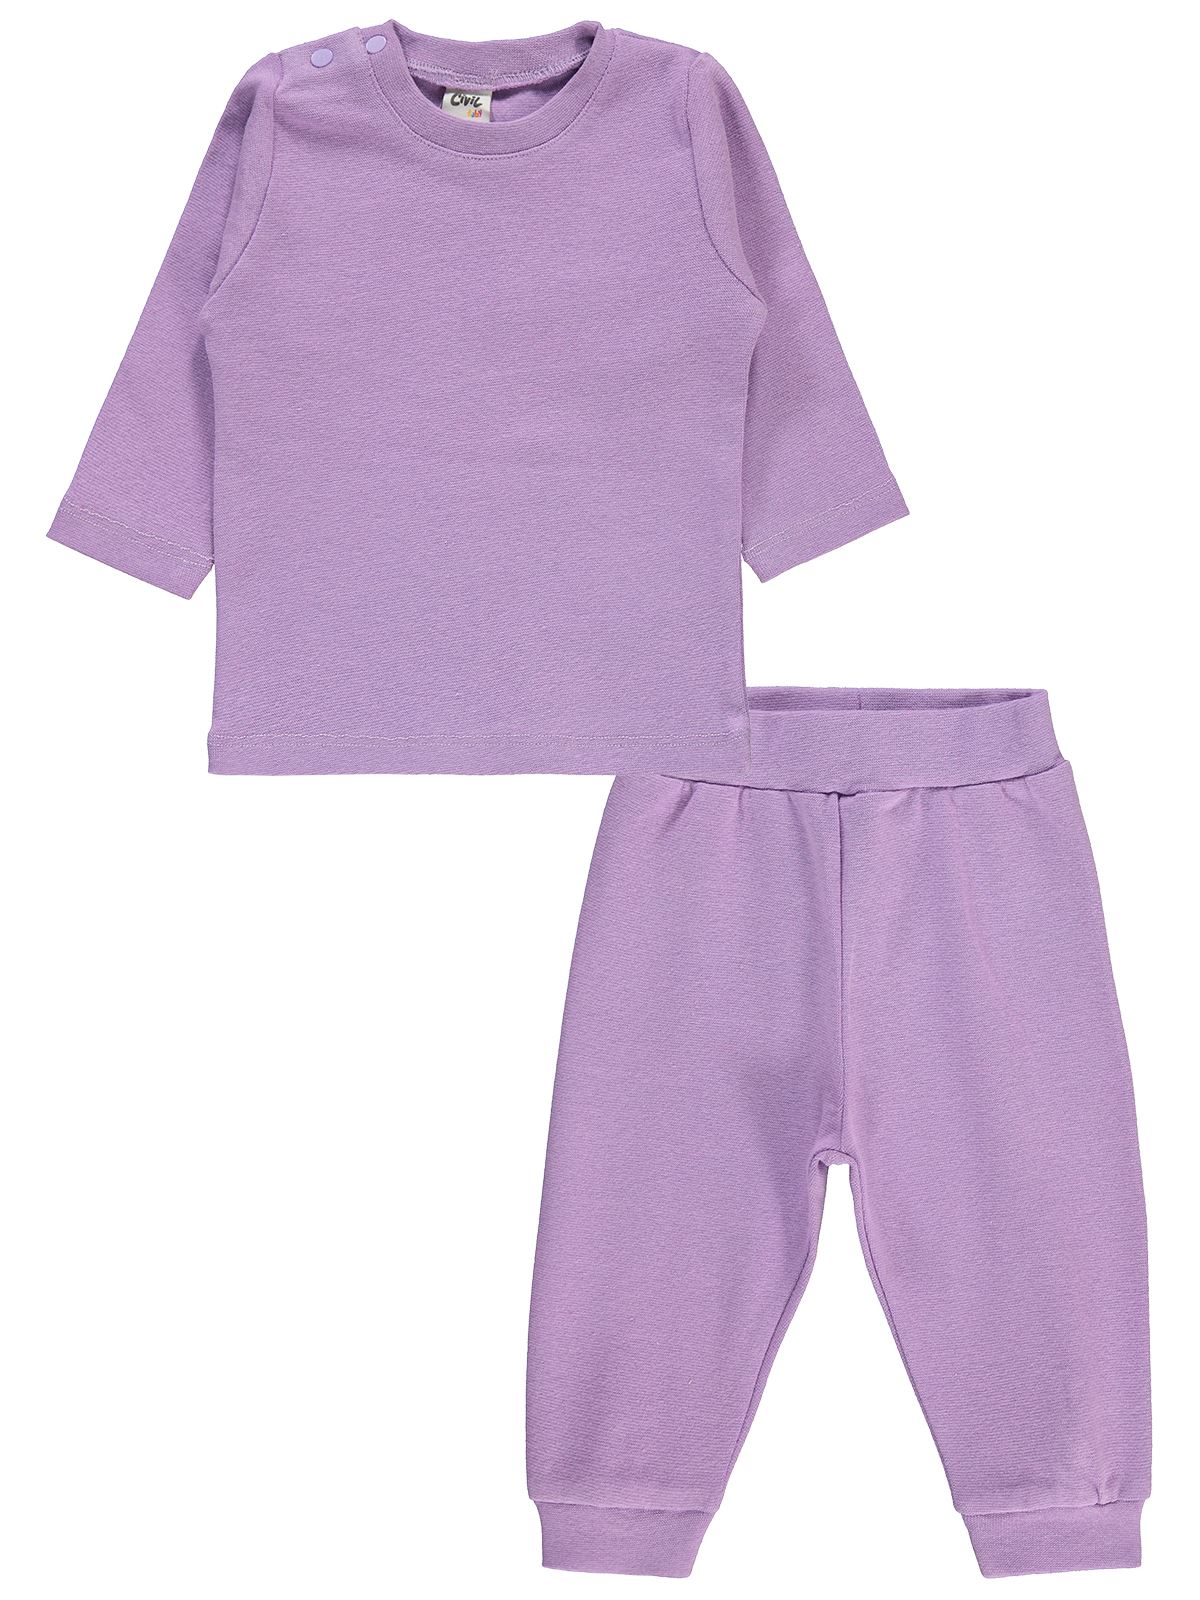 Civil Baby Bebek Pijama Takımı 6-18 Ay Lila